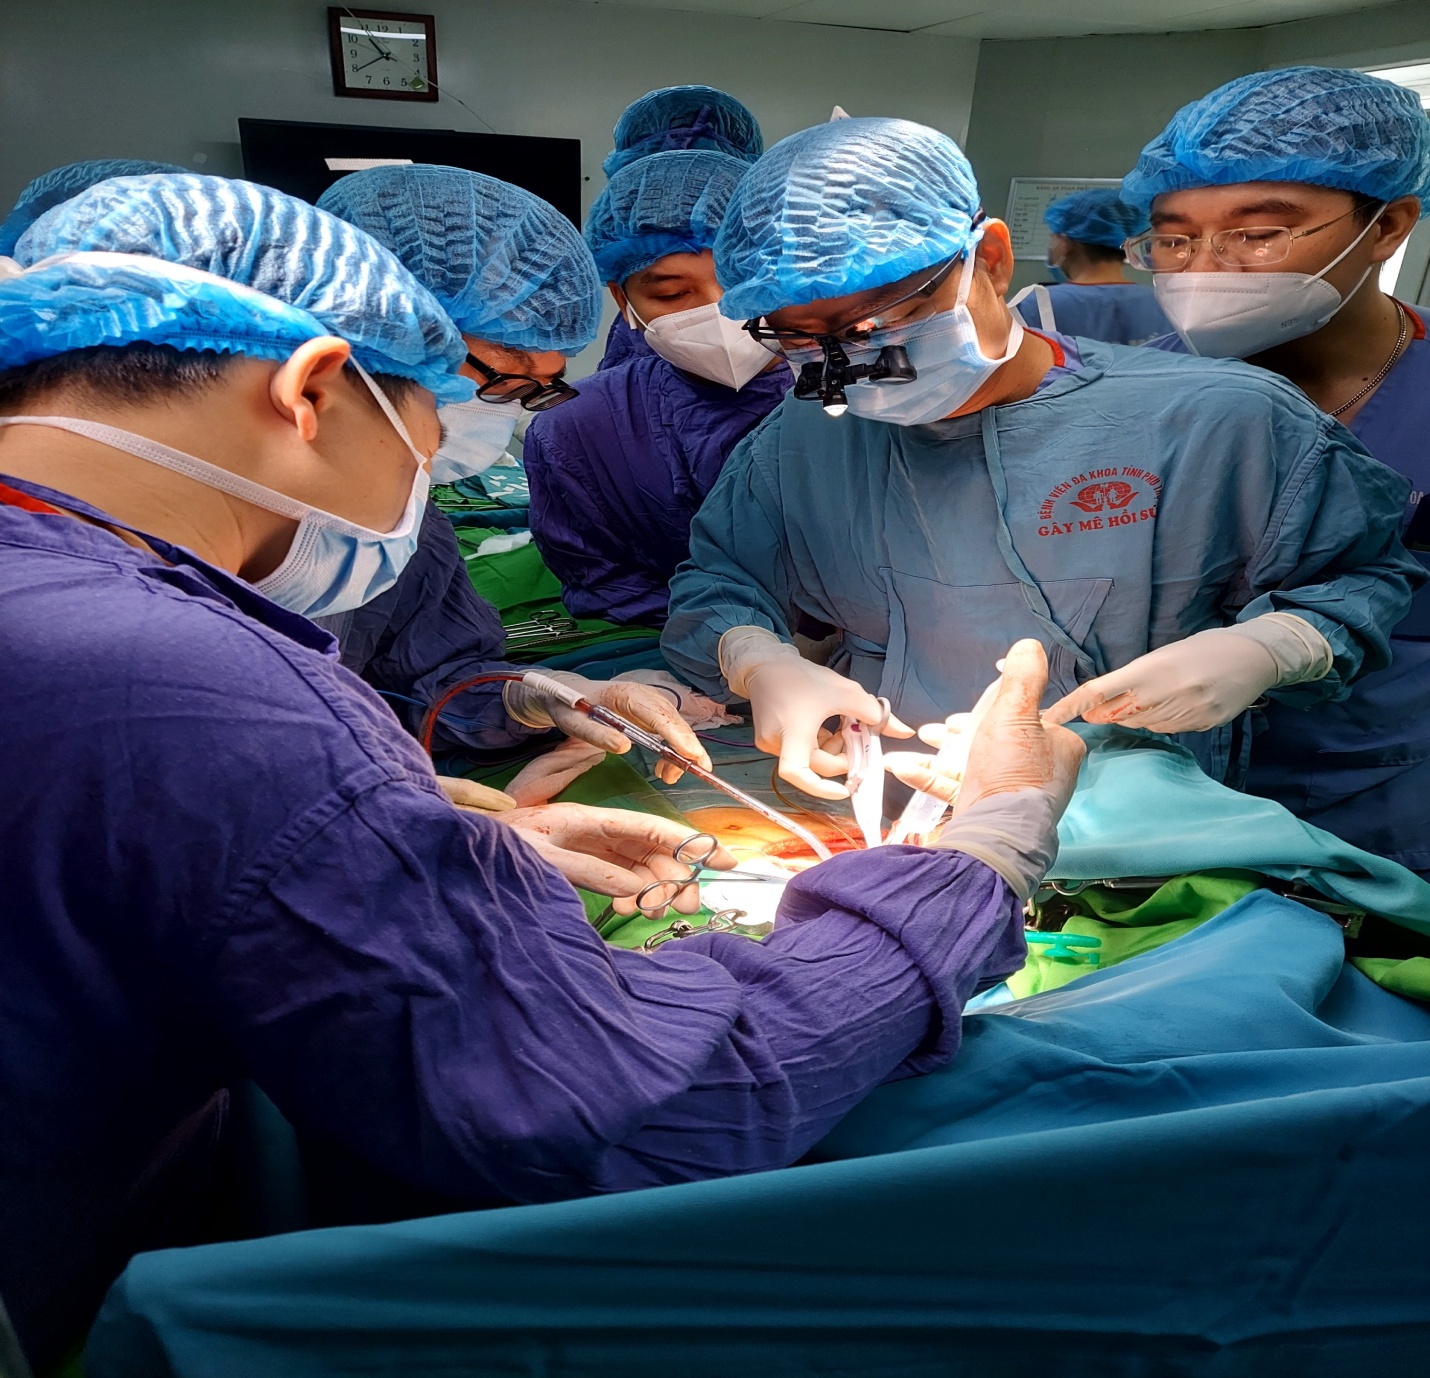 PGS.TS Nguyễn Quang Nghĩa - Giám đốc Trung tâm Ghép tạng, Bệnh viện Hữu nghị Việt Đức cùng ekip phẫu thuật  cắt gan cho người bệnh